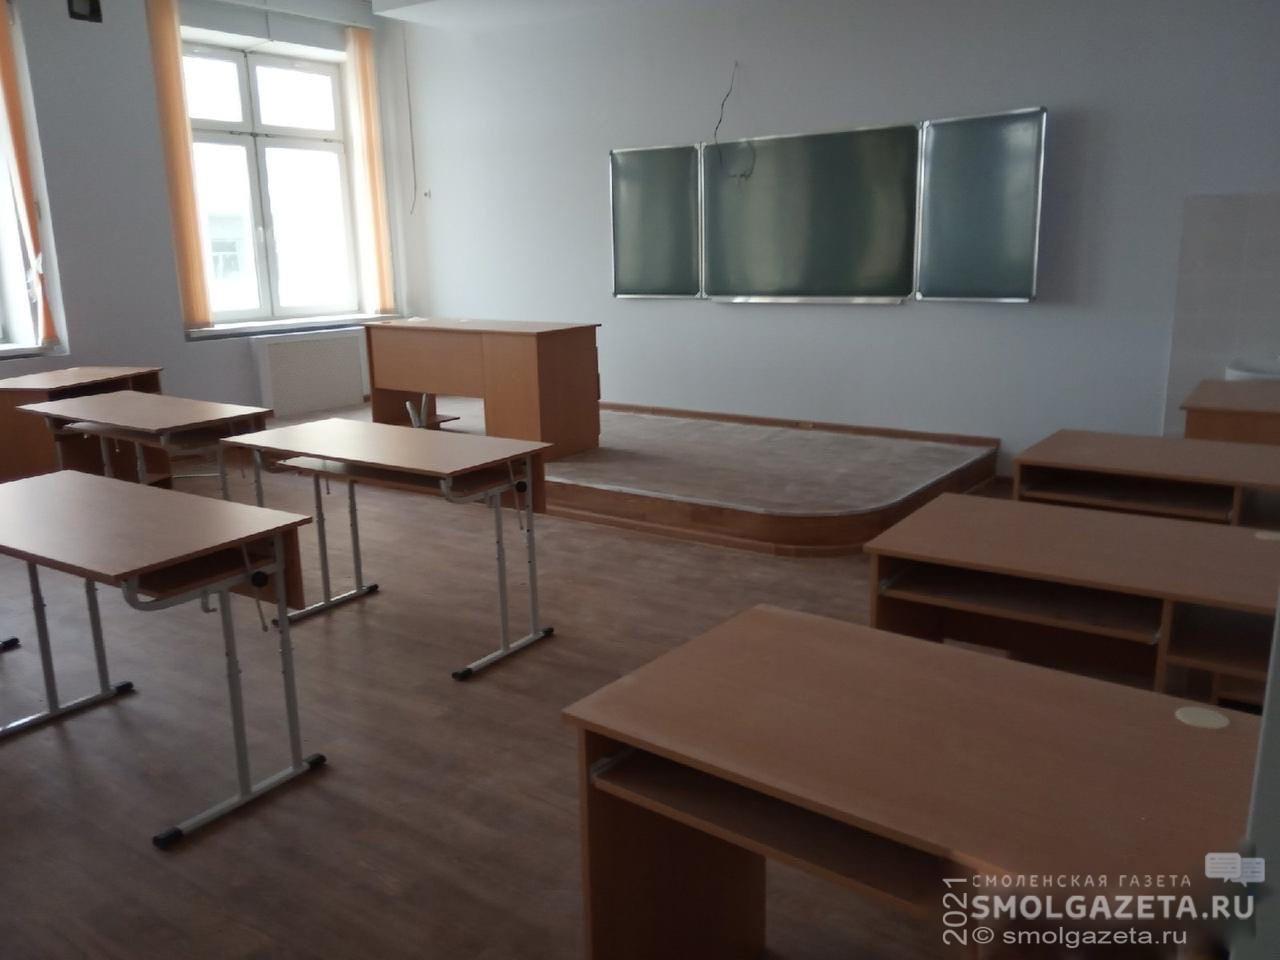 В двух общеобразовательных учреждениях Смоленска приостановили учебный процесс